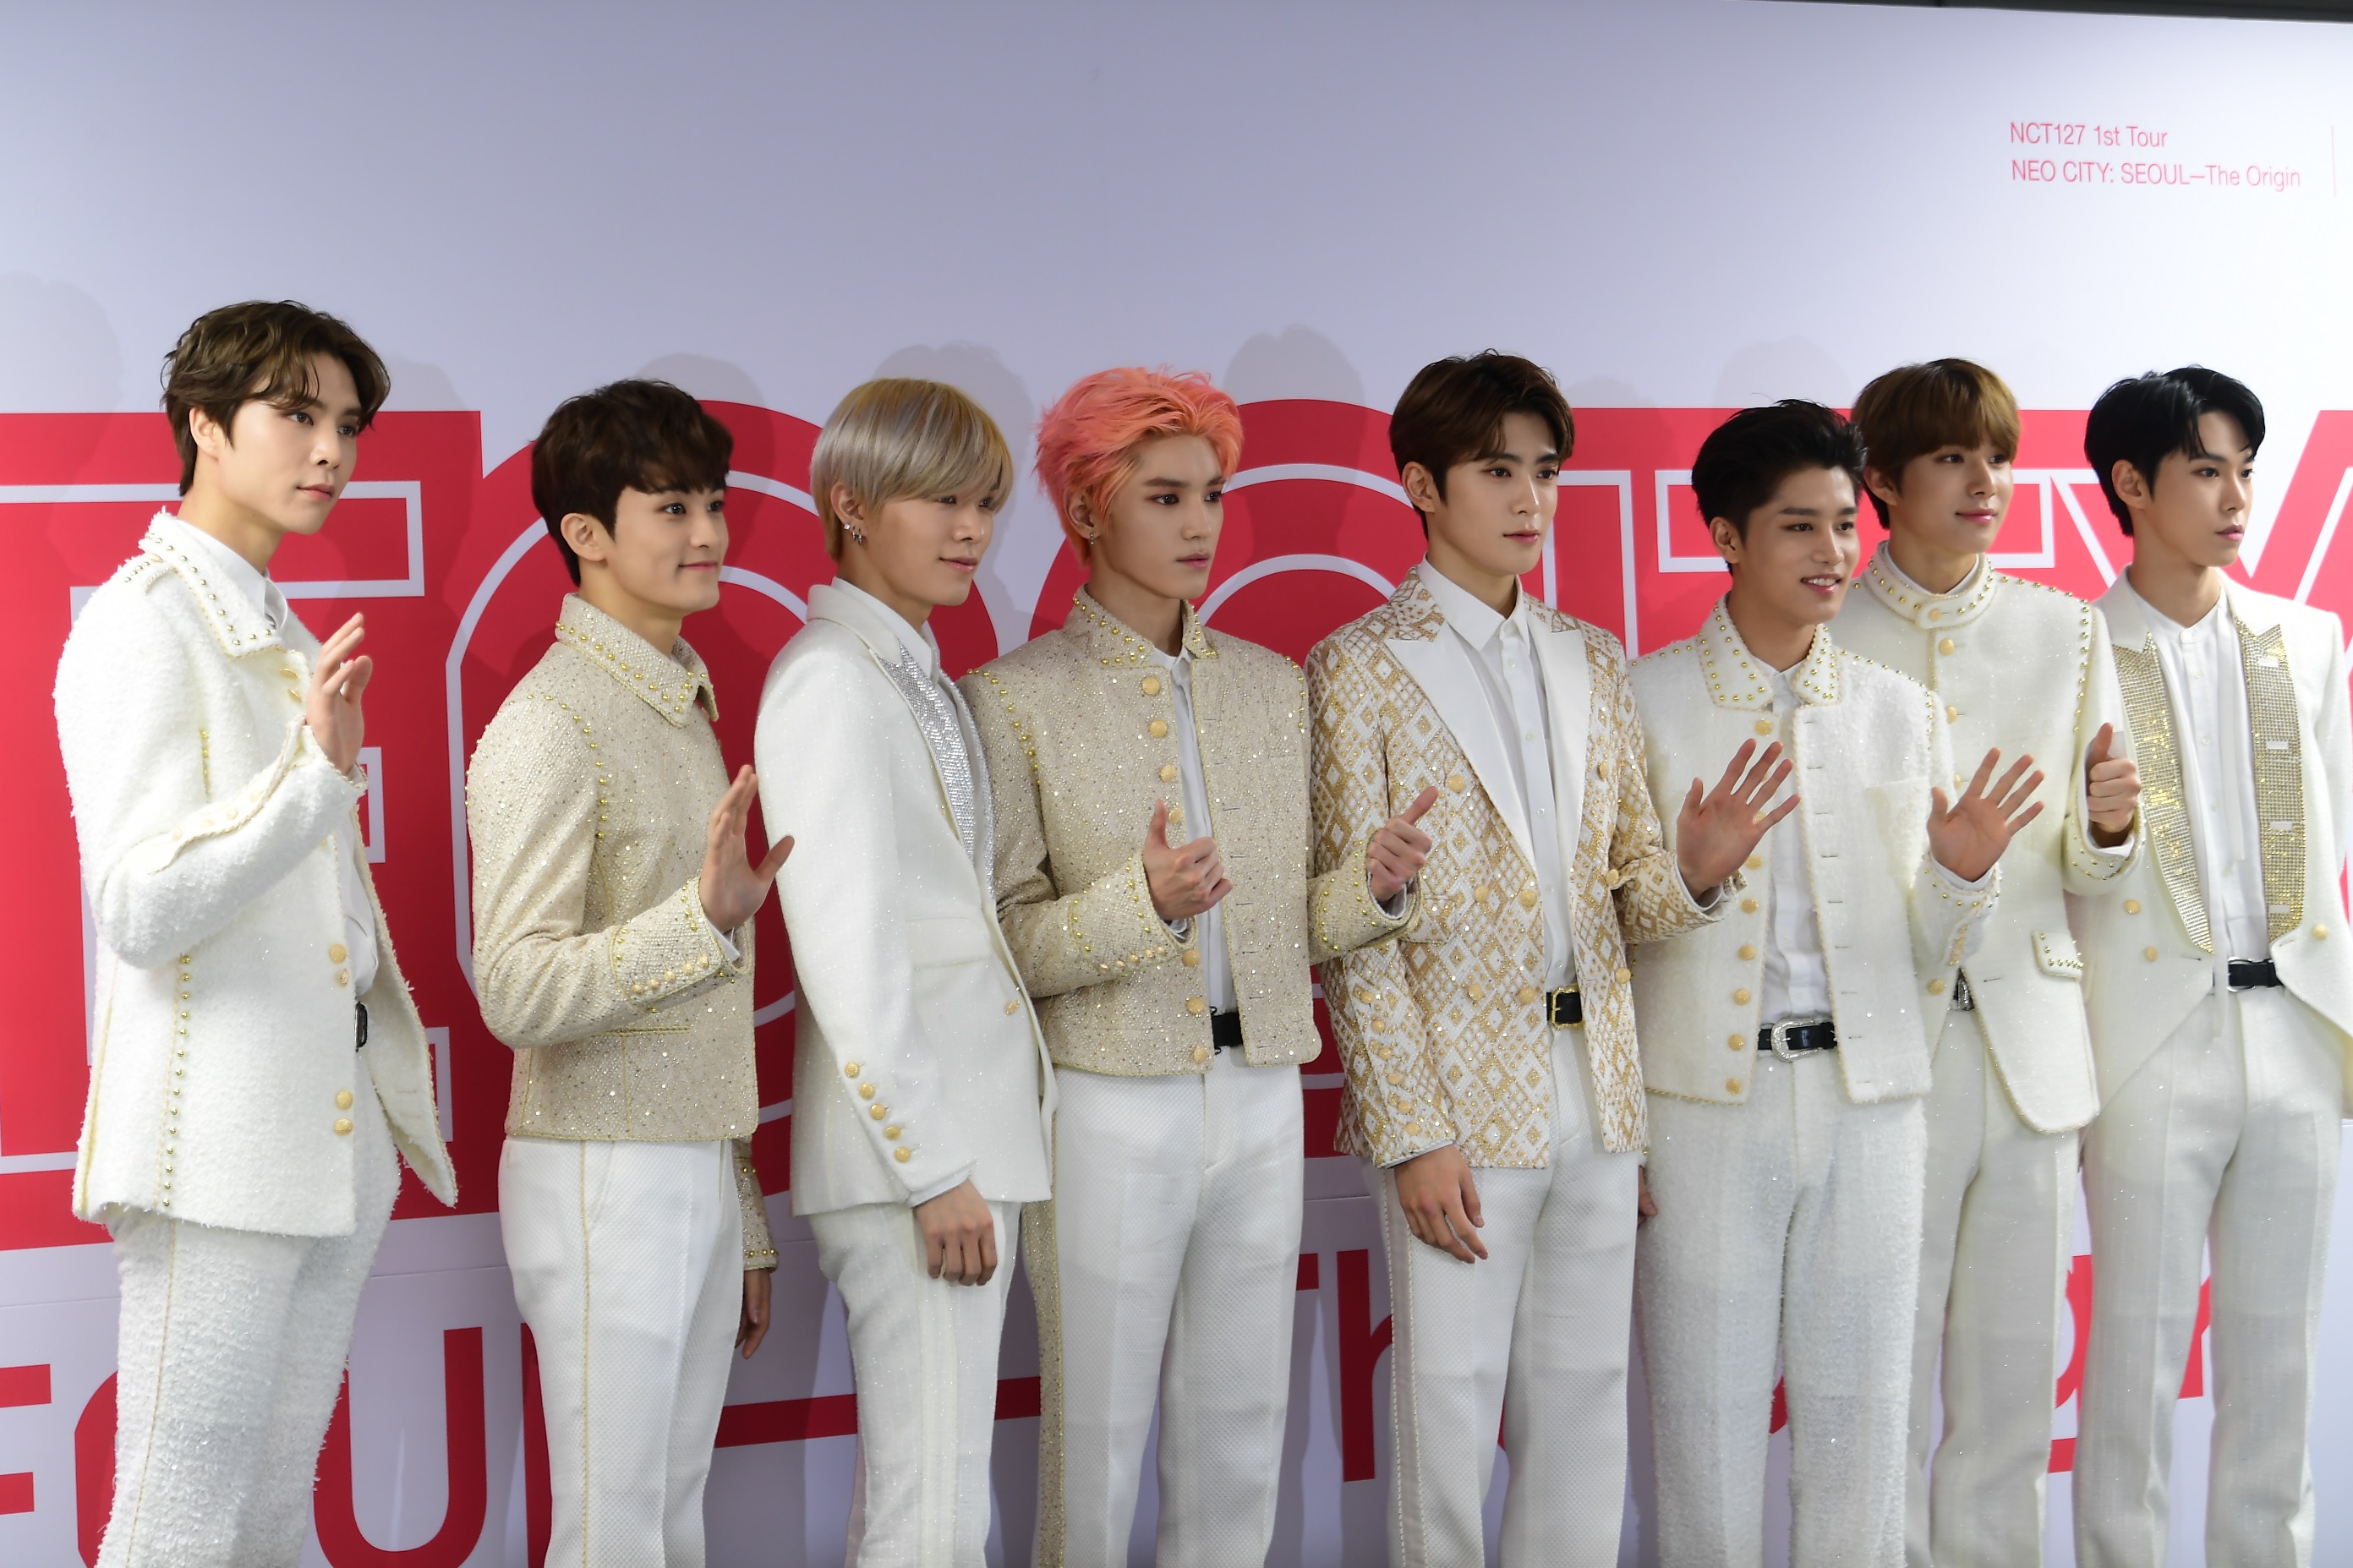 NCT 127이 27일 서울 올림픽공원 체조경기장에서 열린 첫 단독콘서트 기자회견에서 포즈를 취하고 있다.